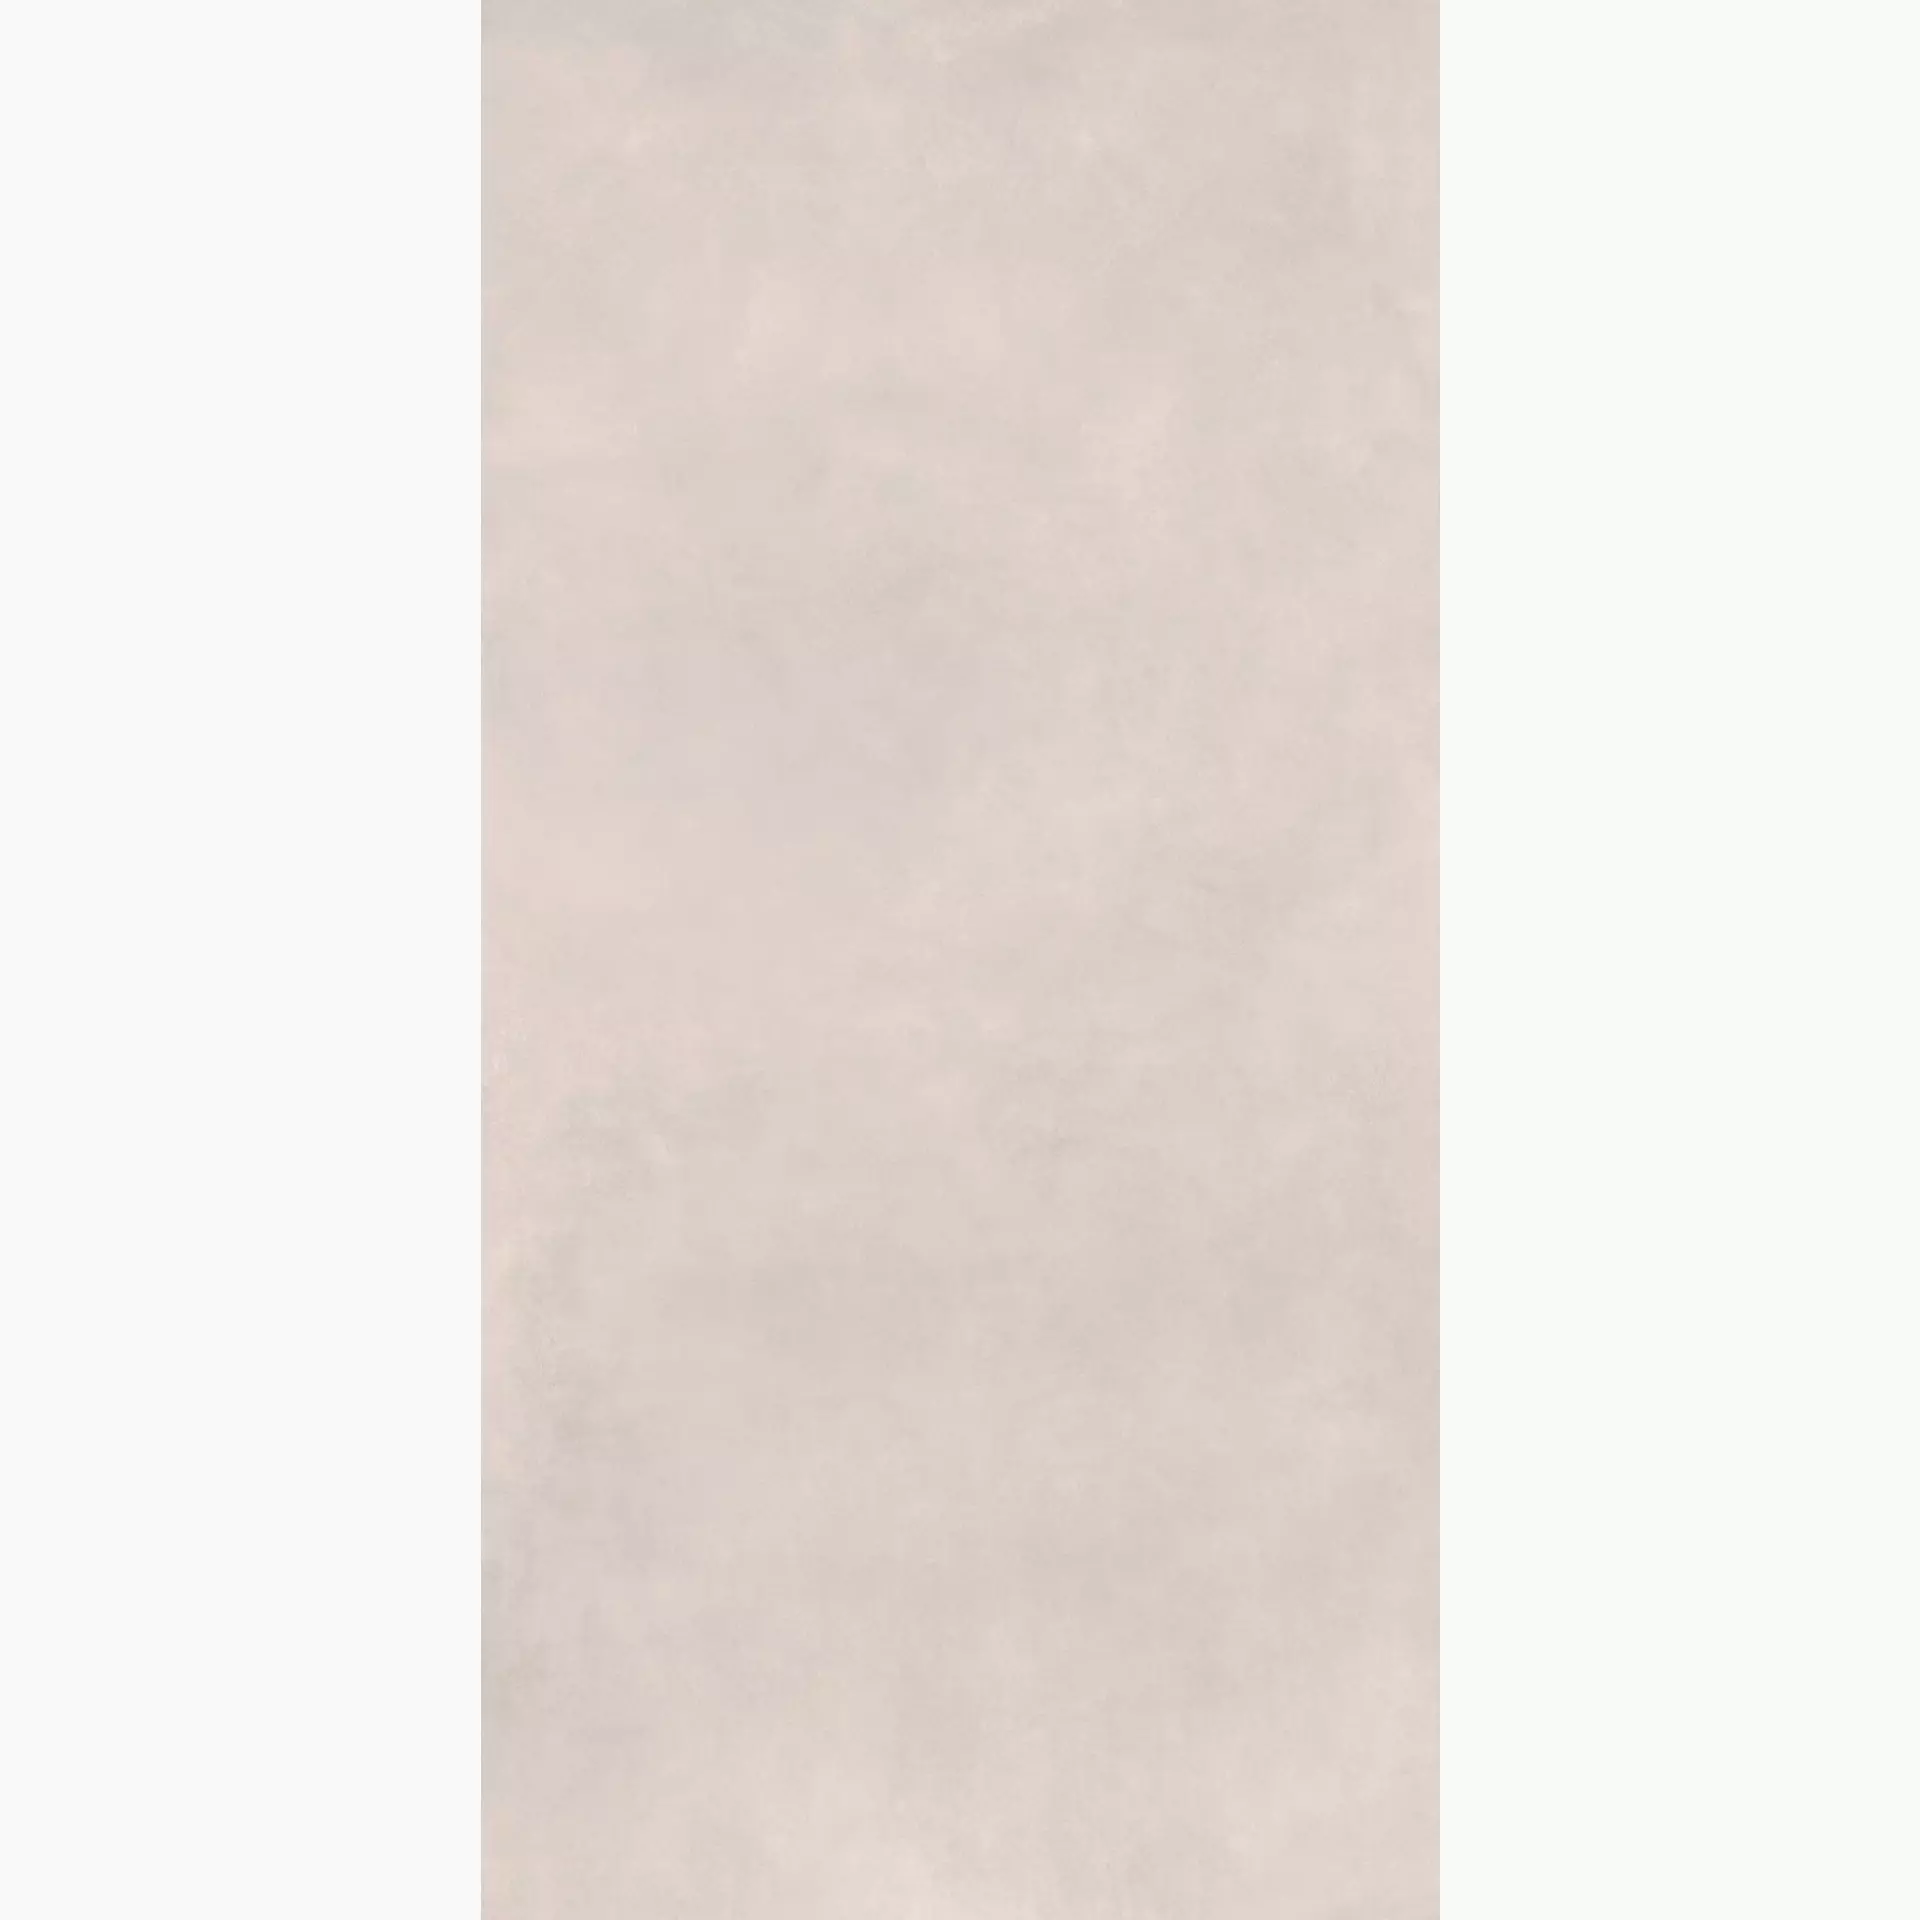 Bodenfliese Marazzi Grande Concrete Look White Naturale – Matt White M37Z matt natur 160x320cm 6mm